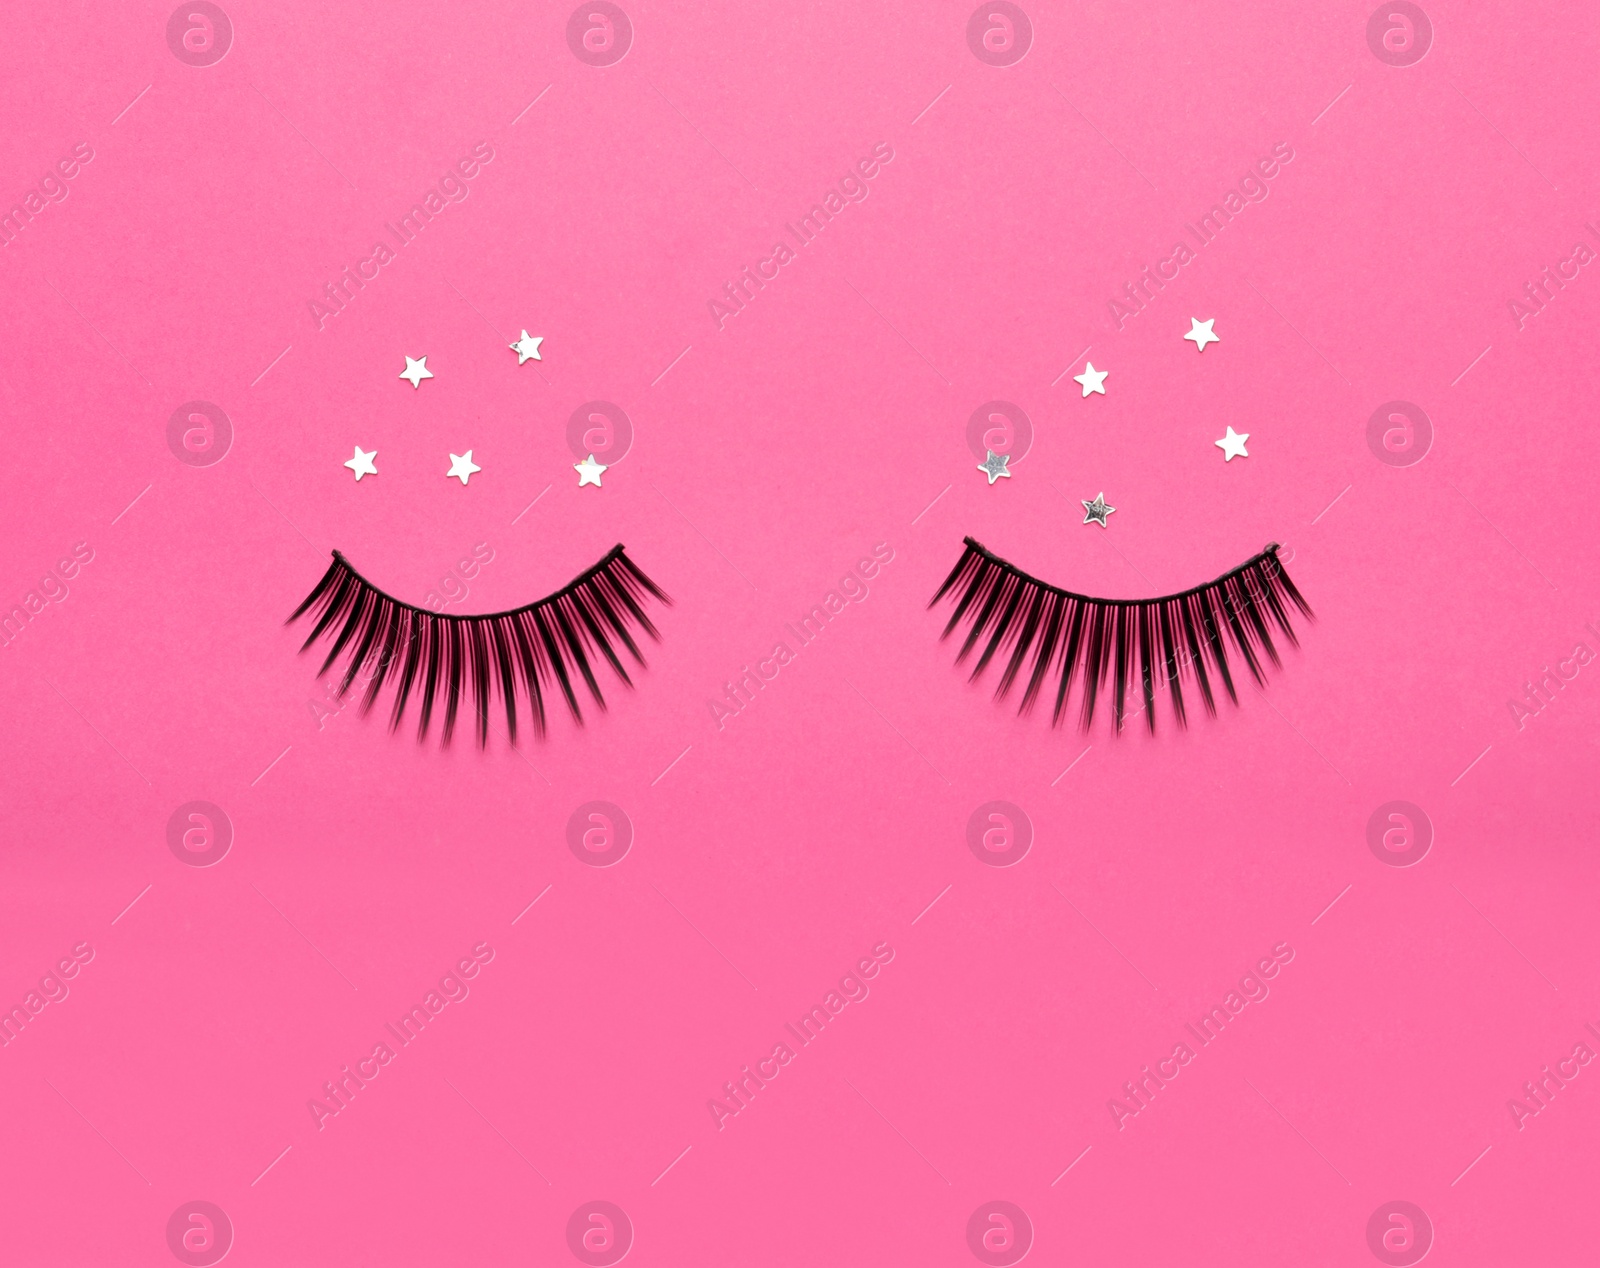 Photo of False eyelashes and sparkles on pink background, flat lay